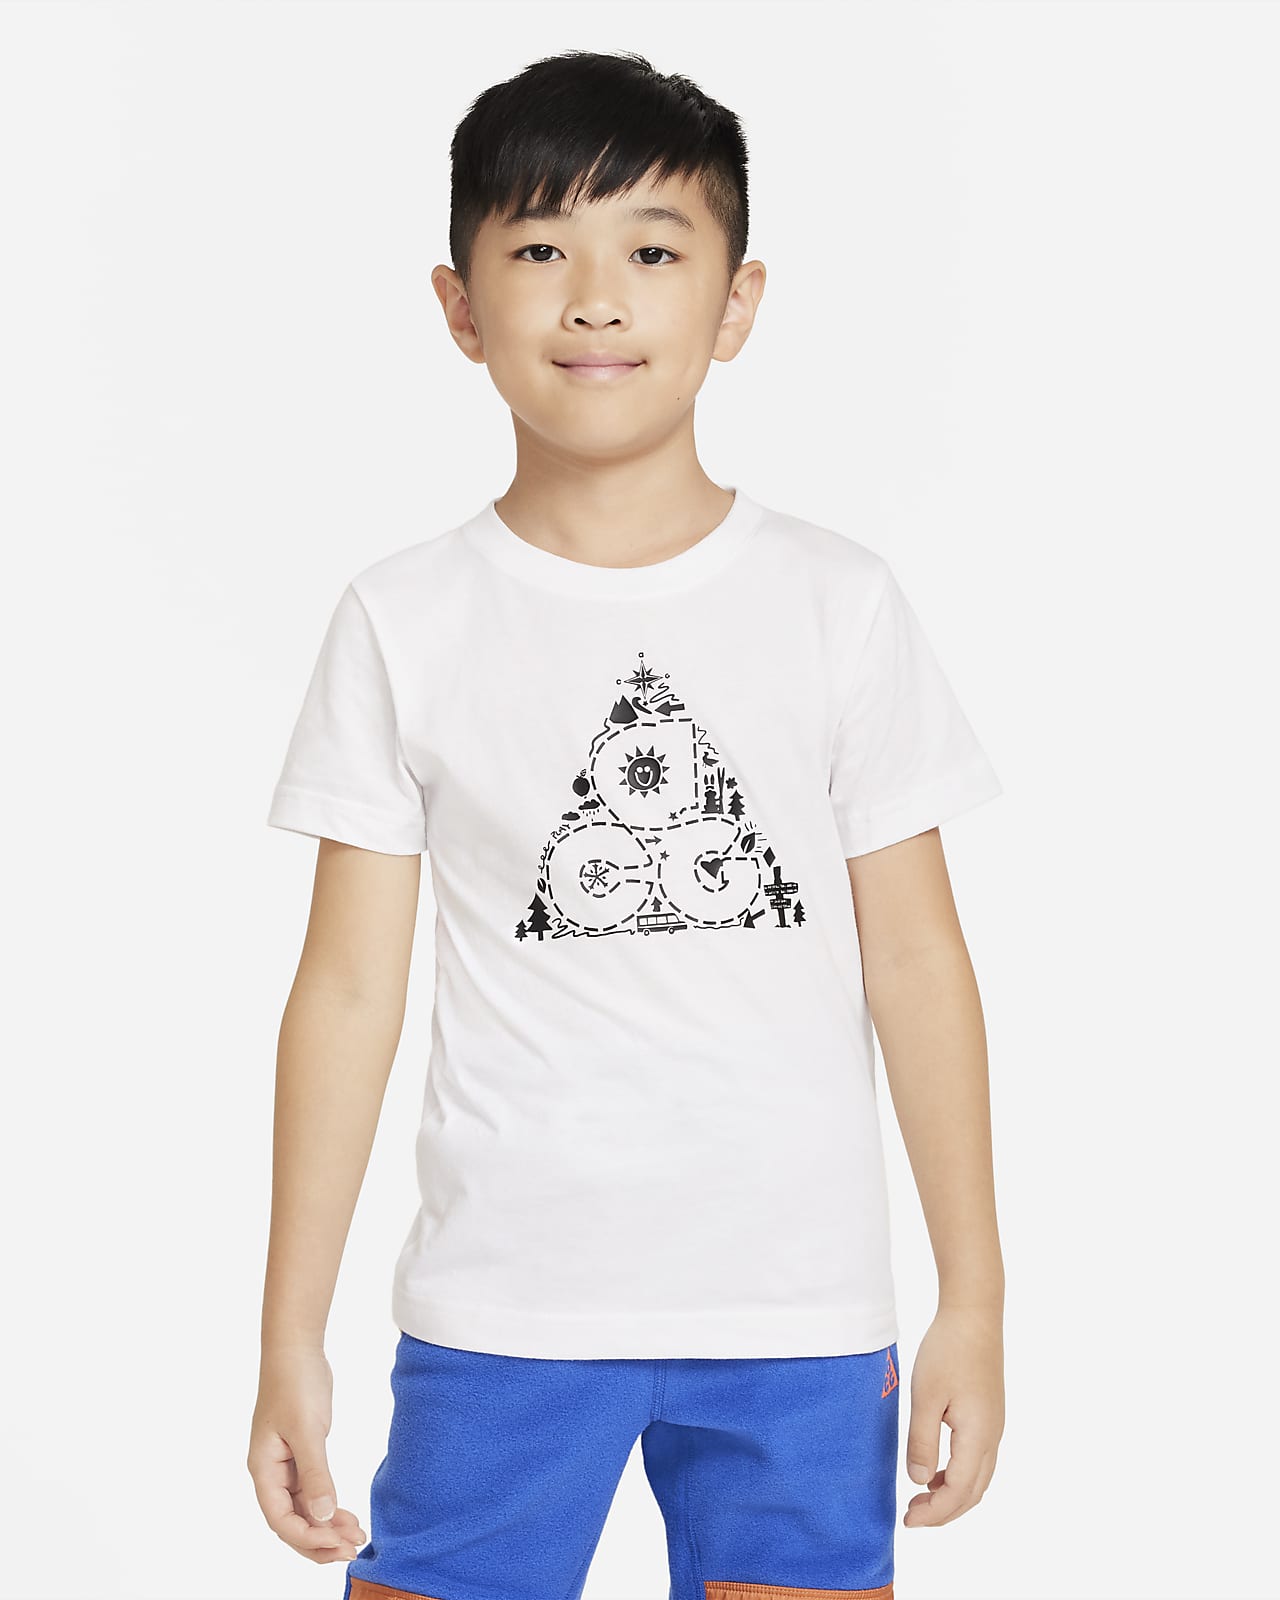 T-shirt ACG Nike para criança